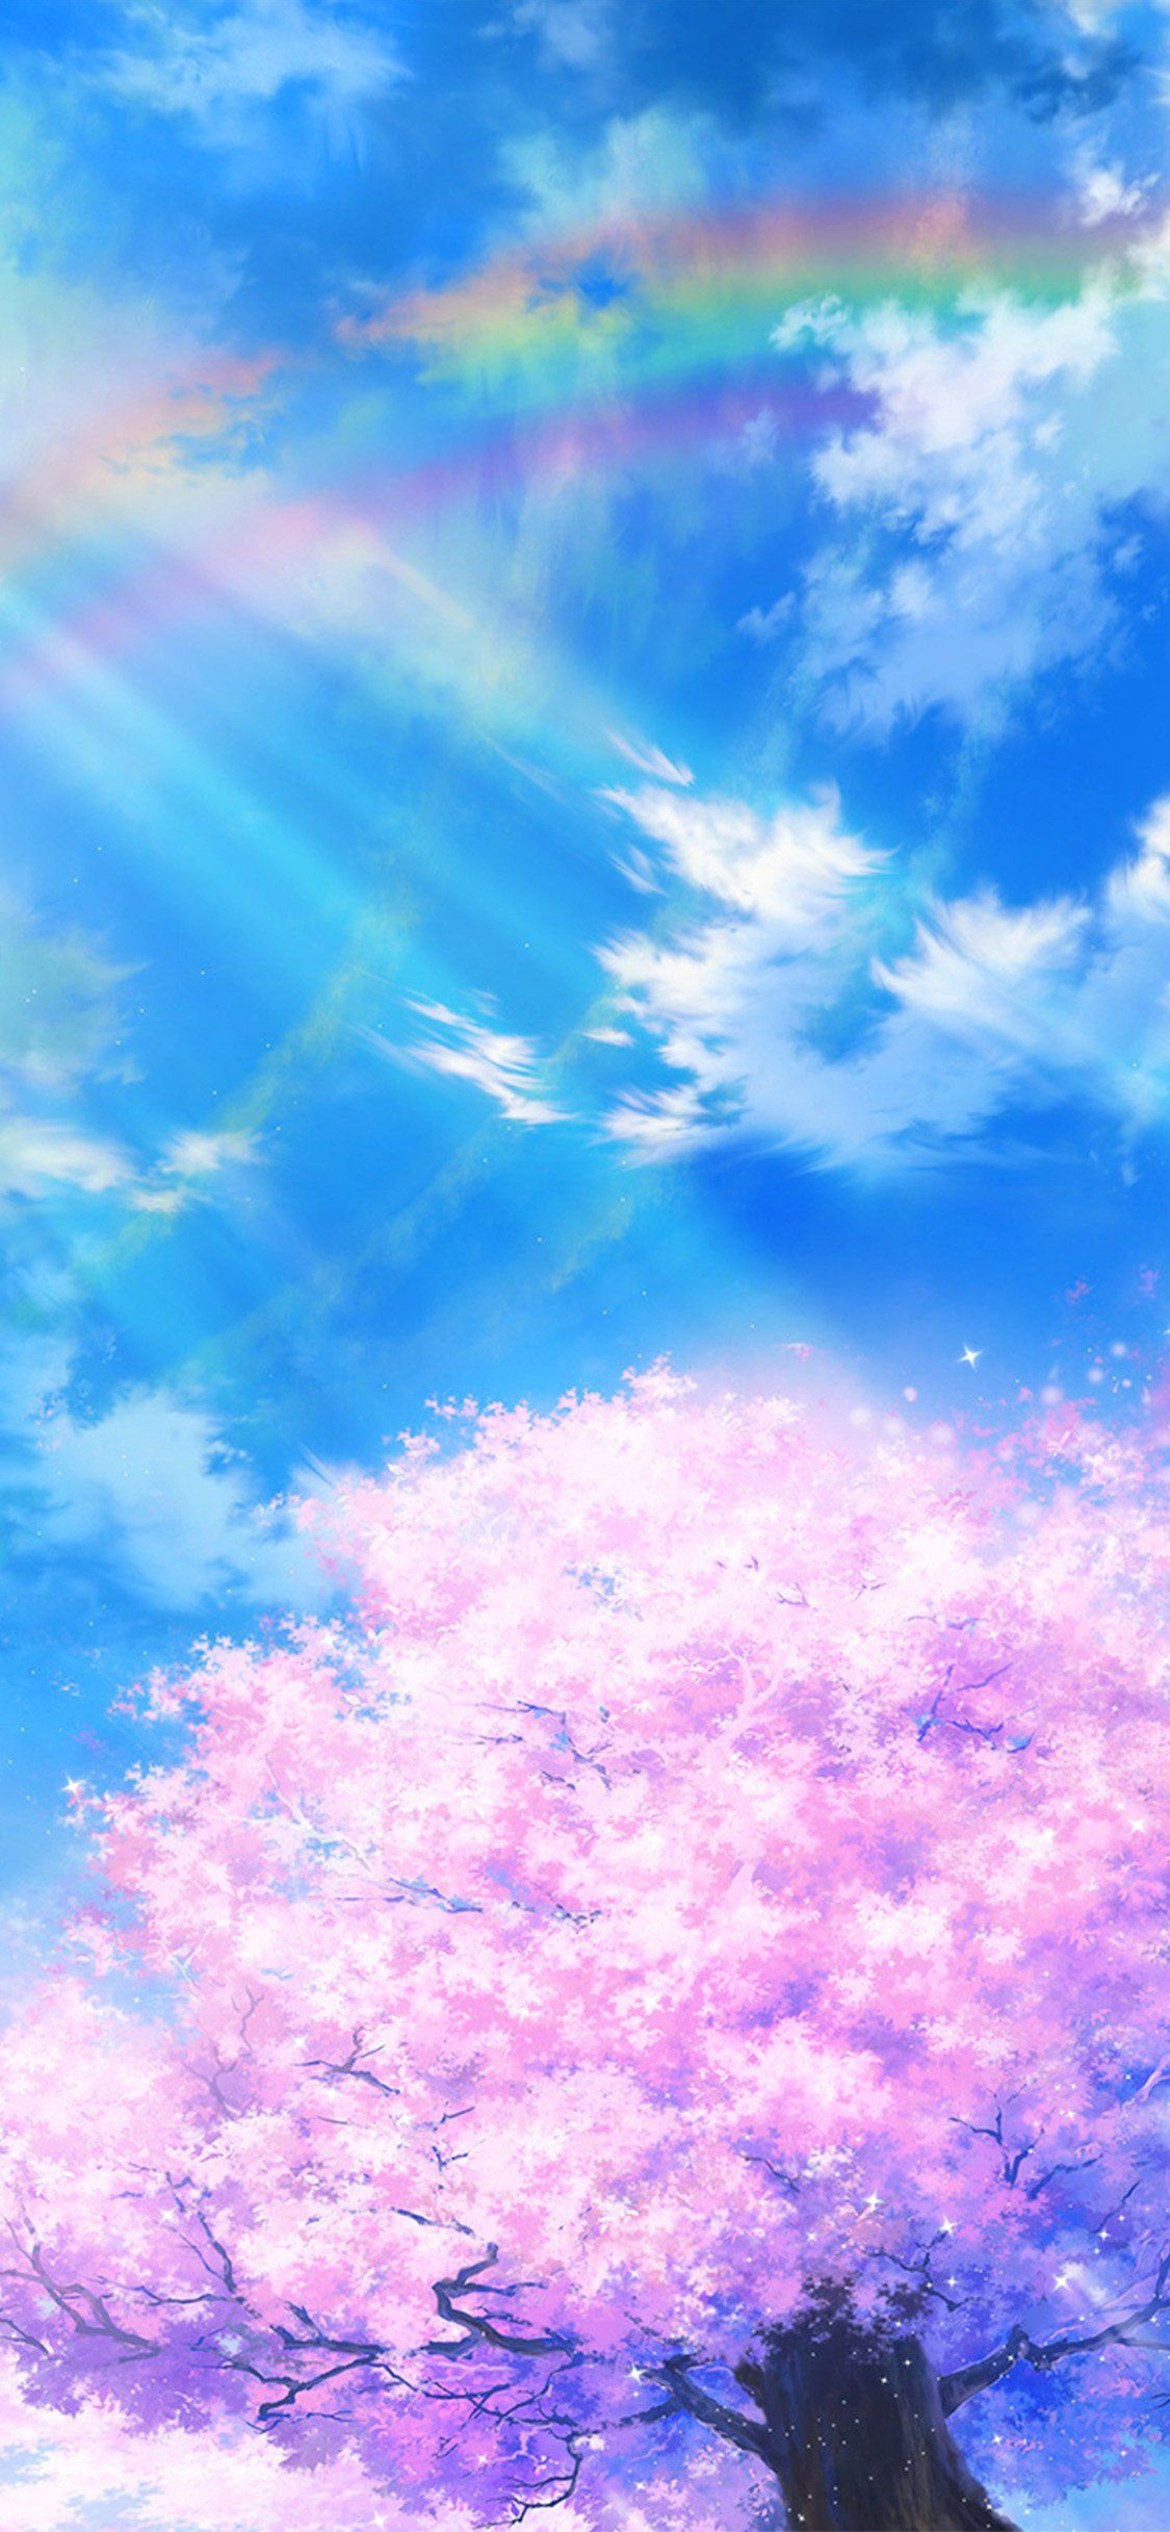 水色の綺麗な空と虹と桜のイラスト Iphone 12 Pro 壁紙 待ち受け Sumaran